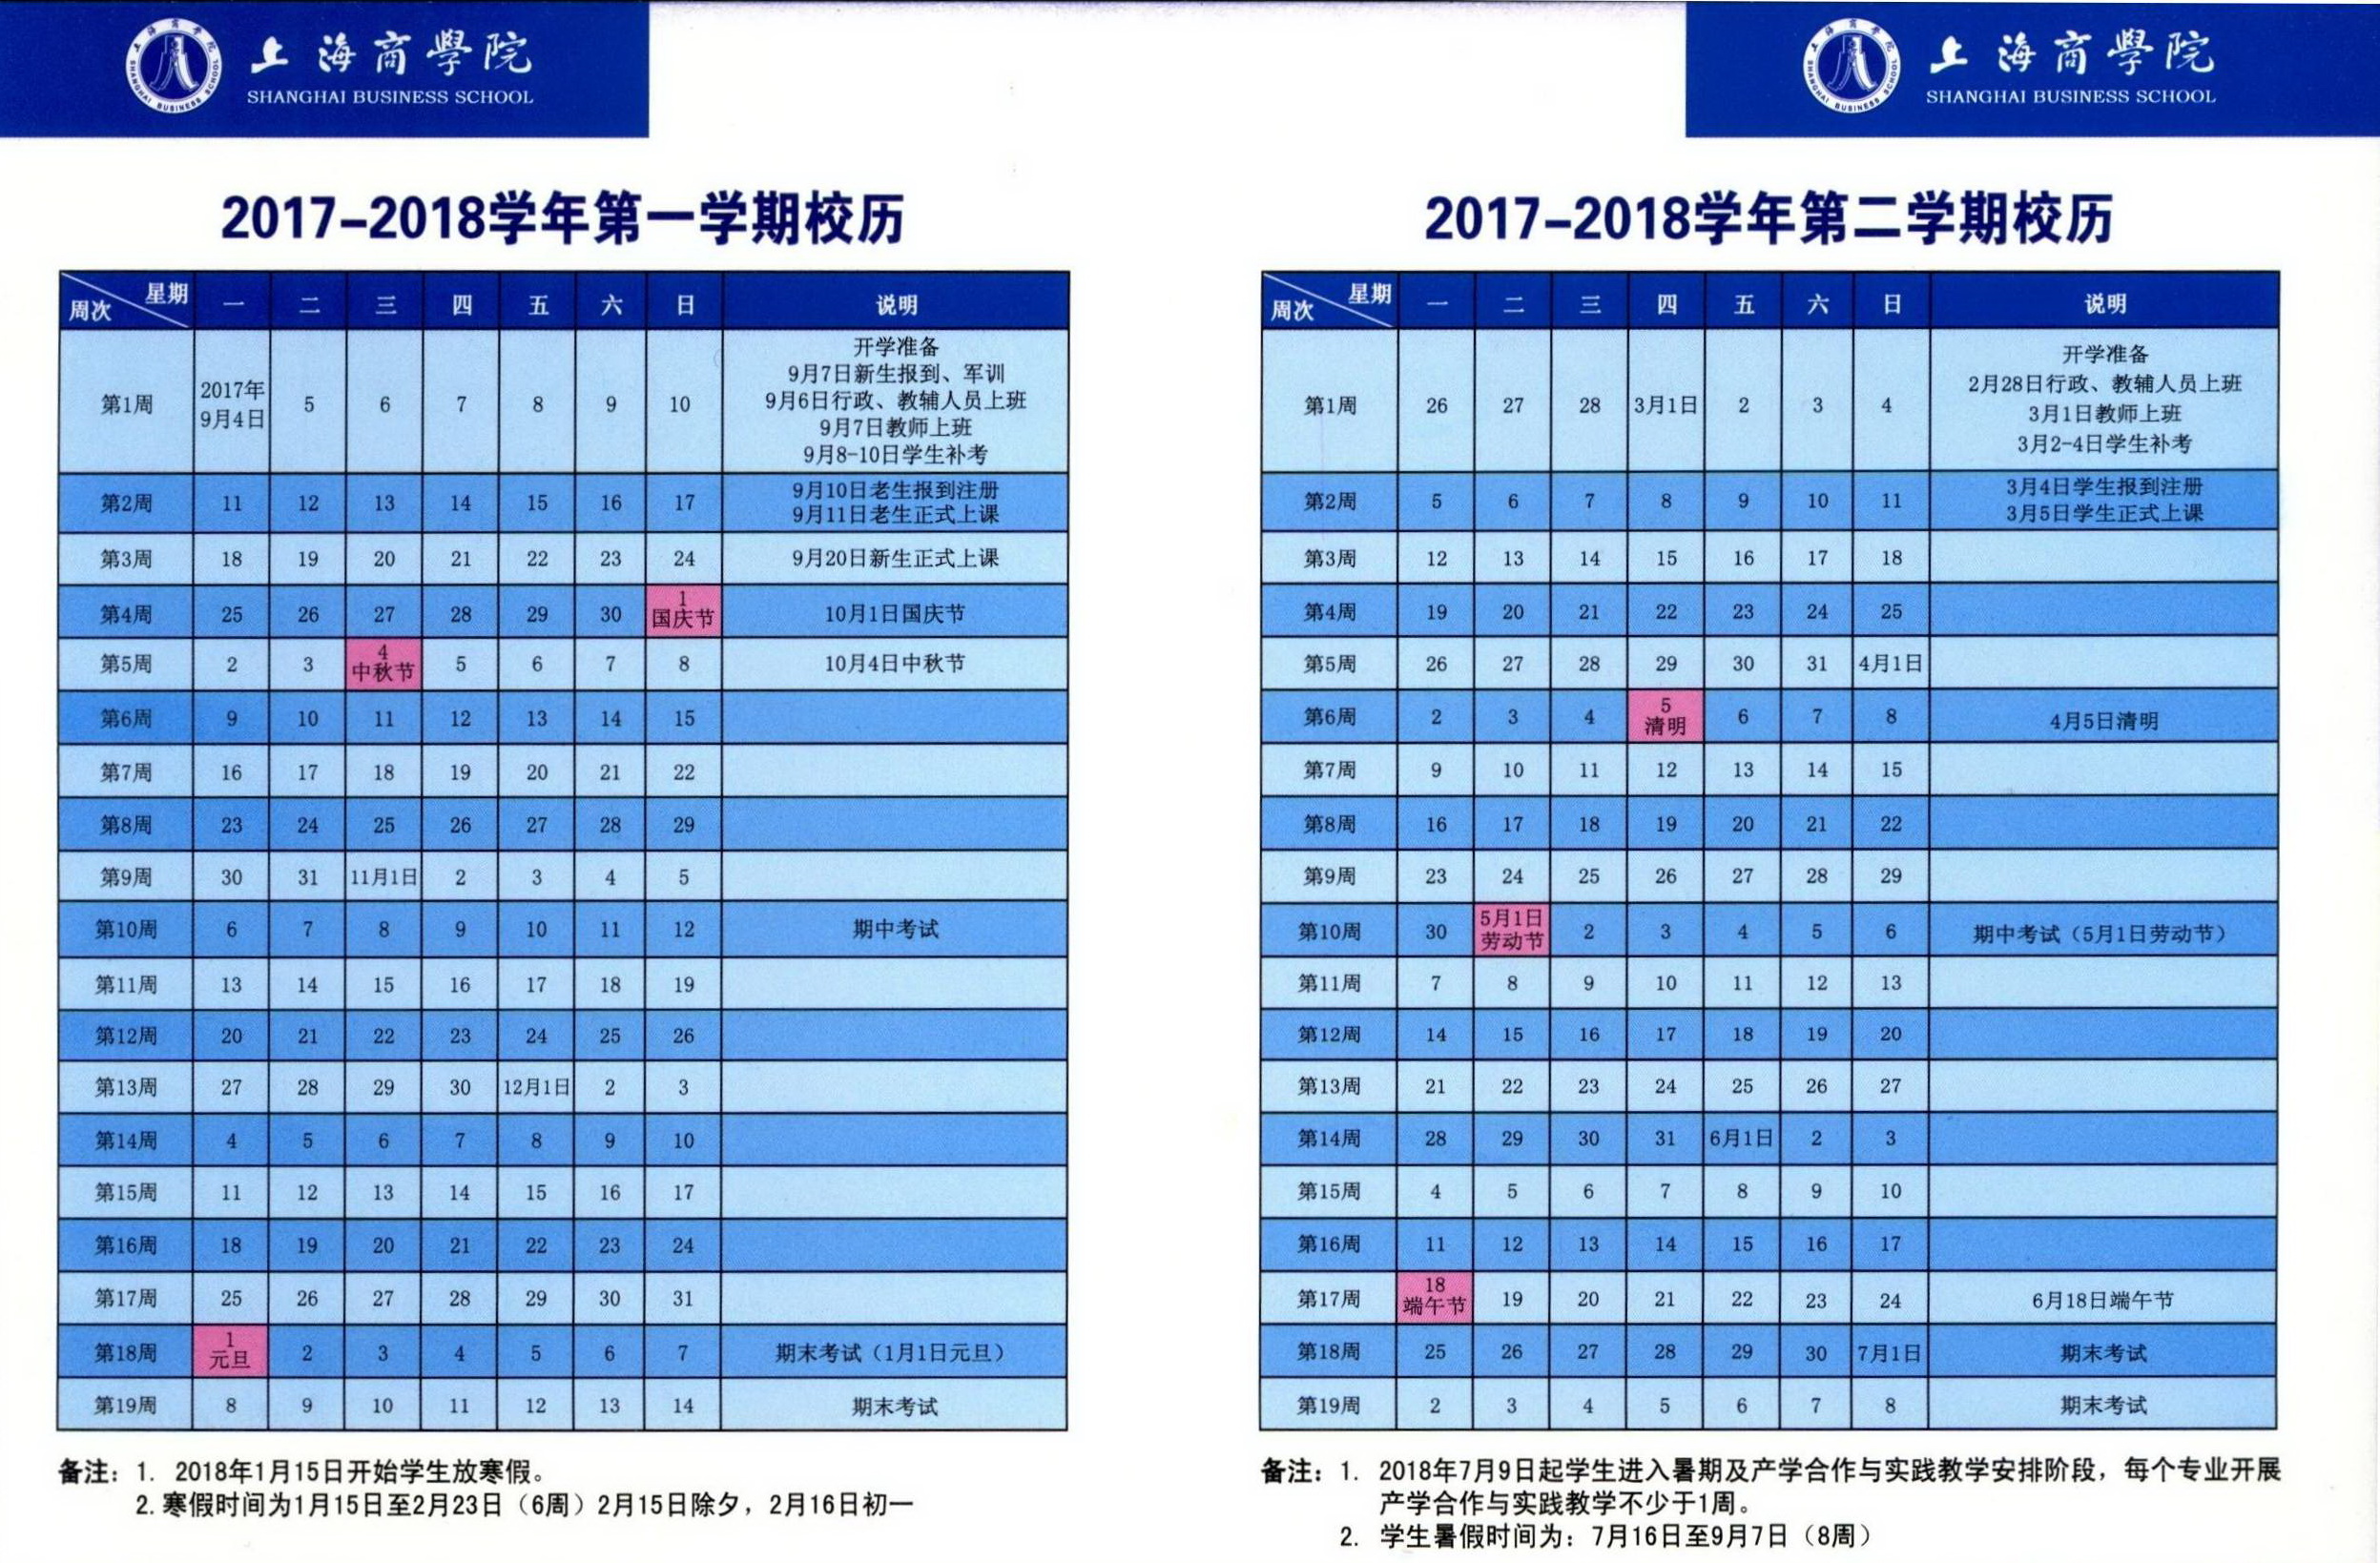 上海商学院2017-2018学年校历.JPG